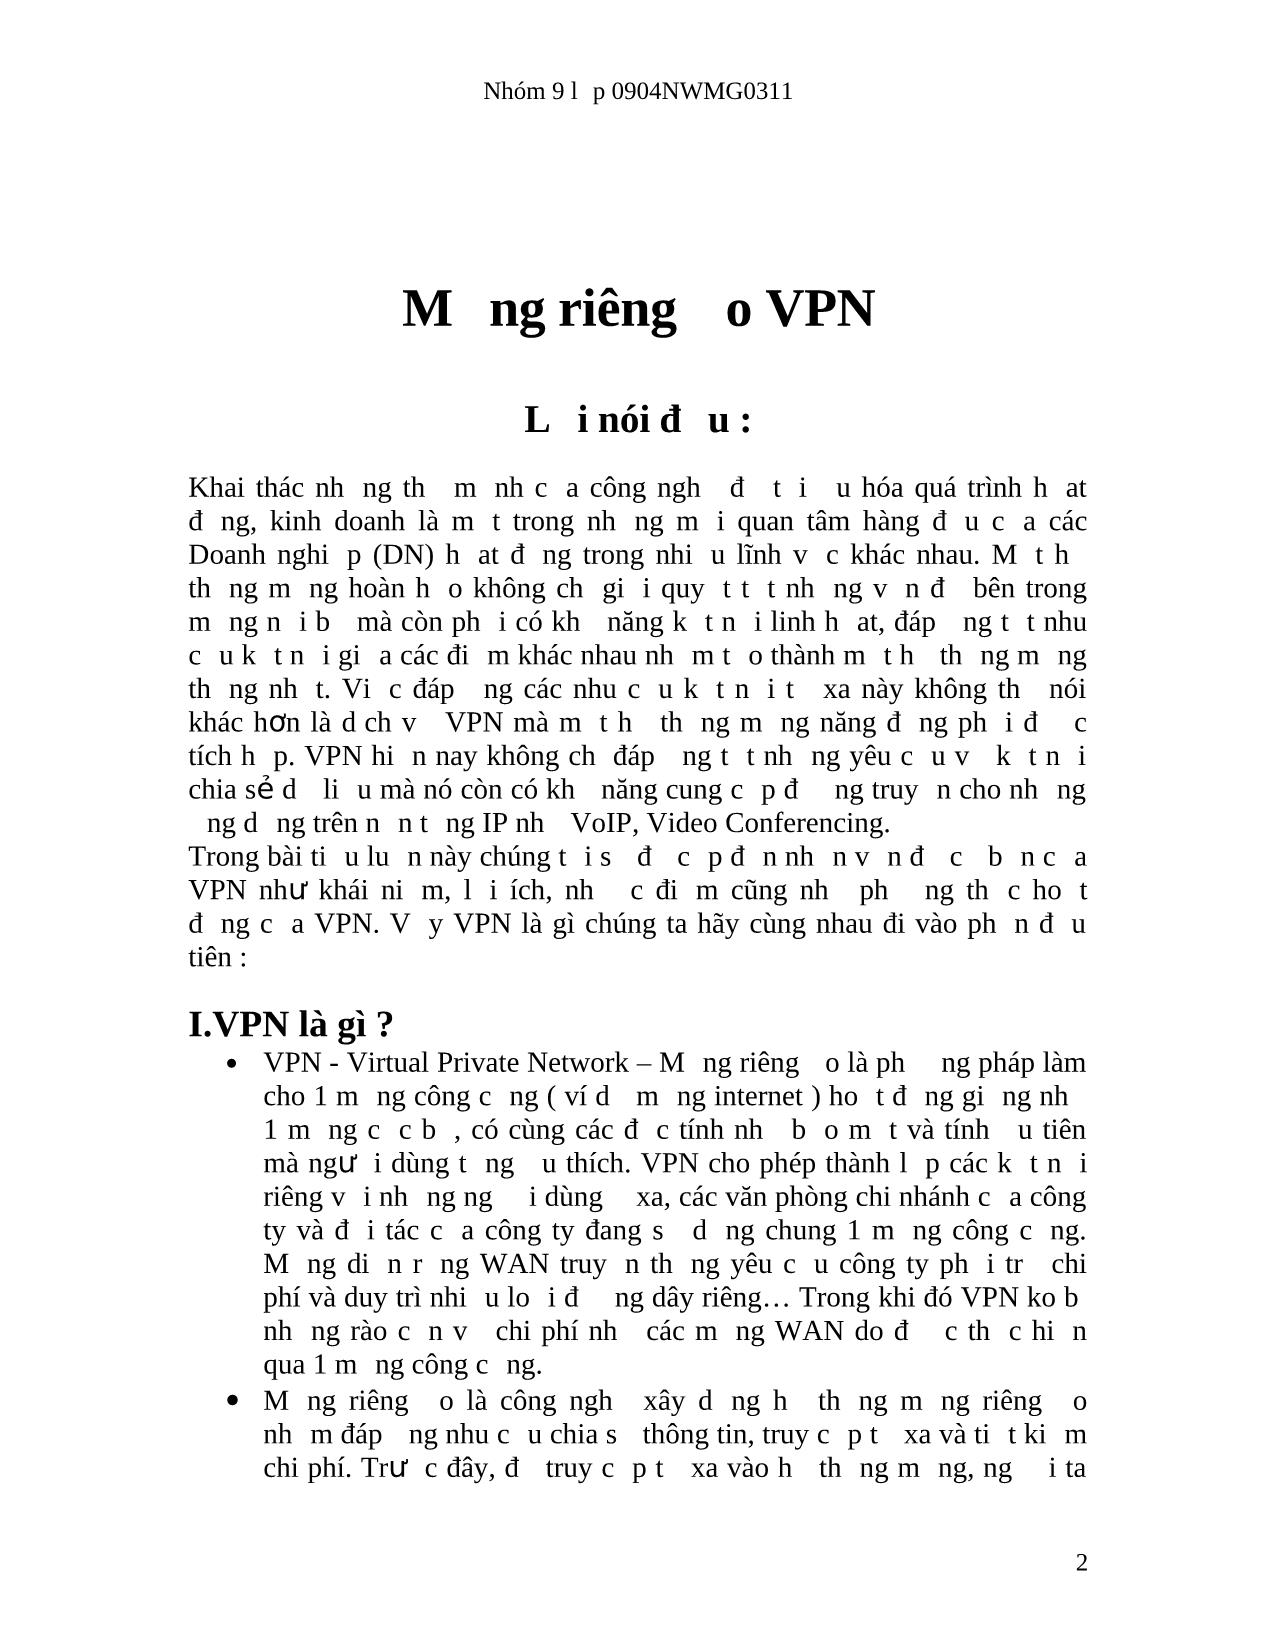 Mạng riêng ảo VPN trang 2